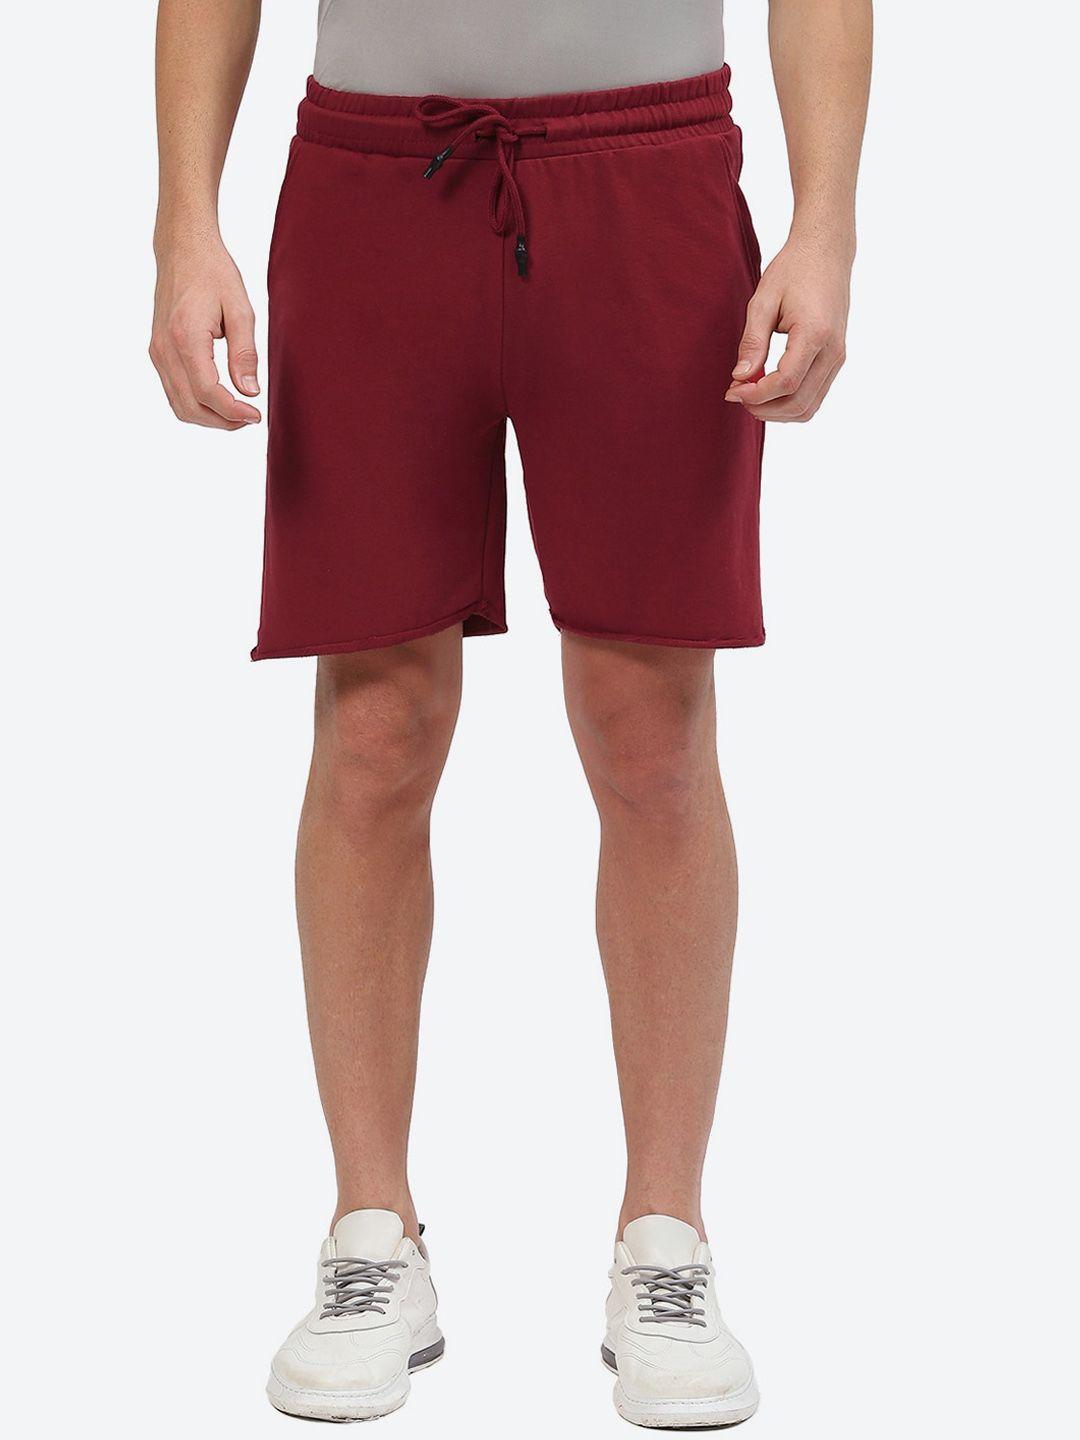 2bme-men-regular-fit-mid-rise-cotton-sports-shorts